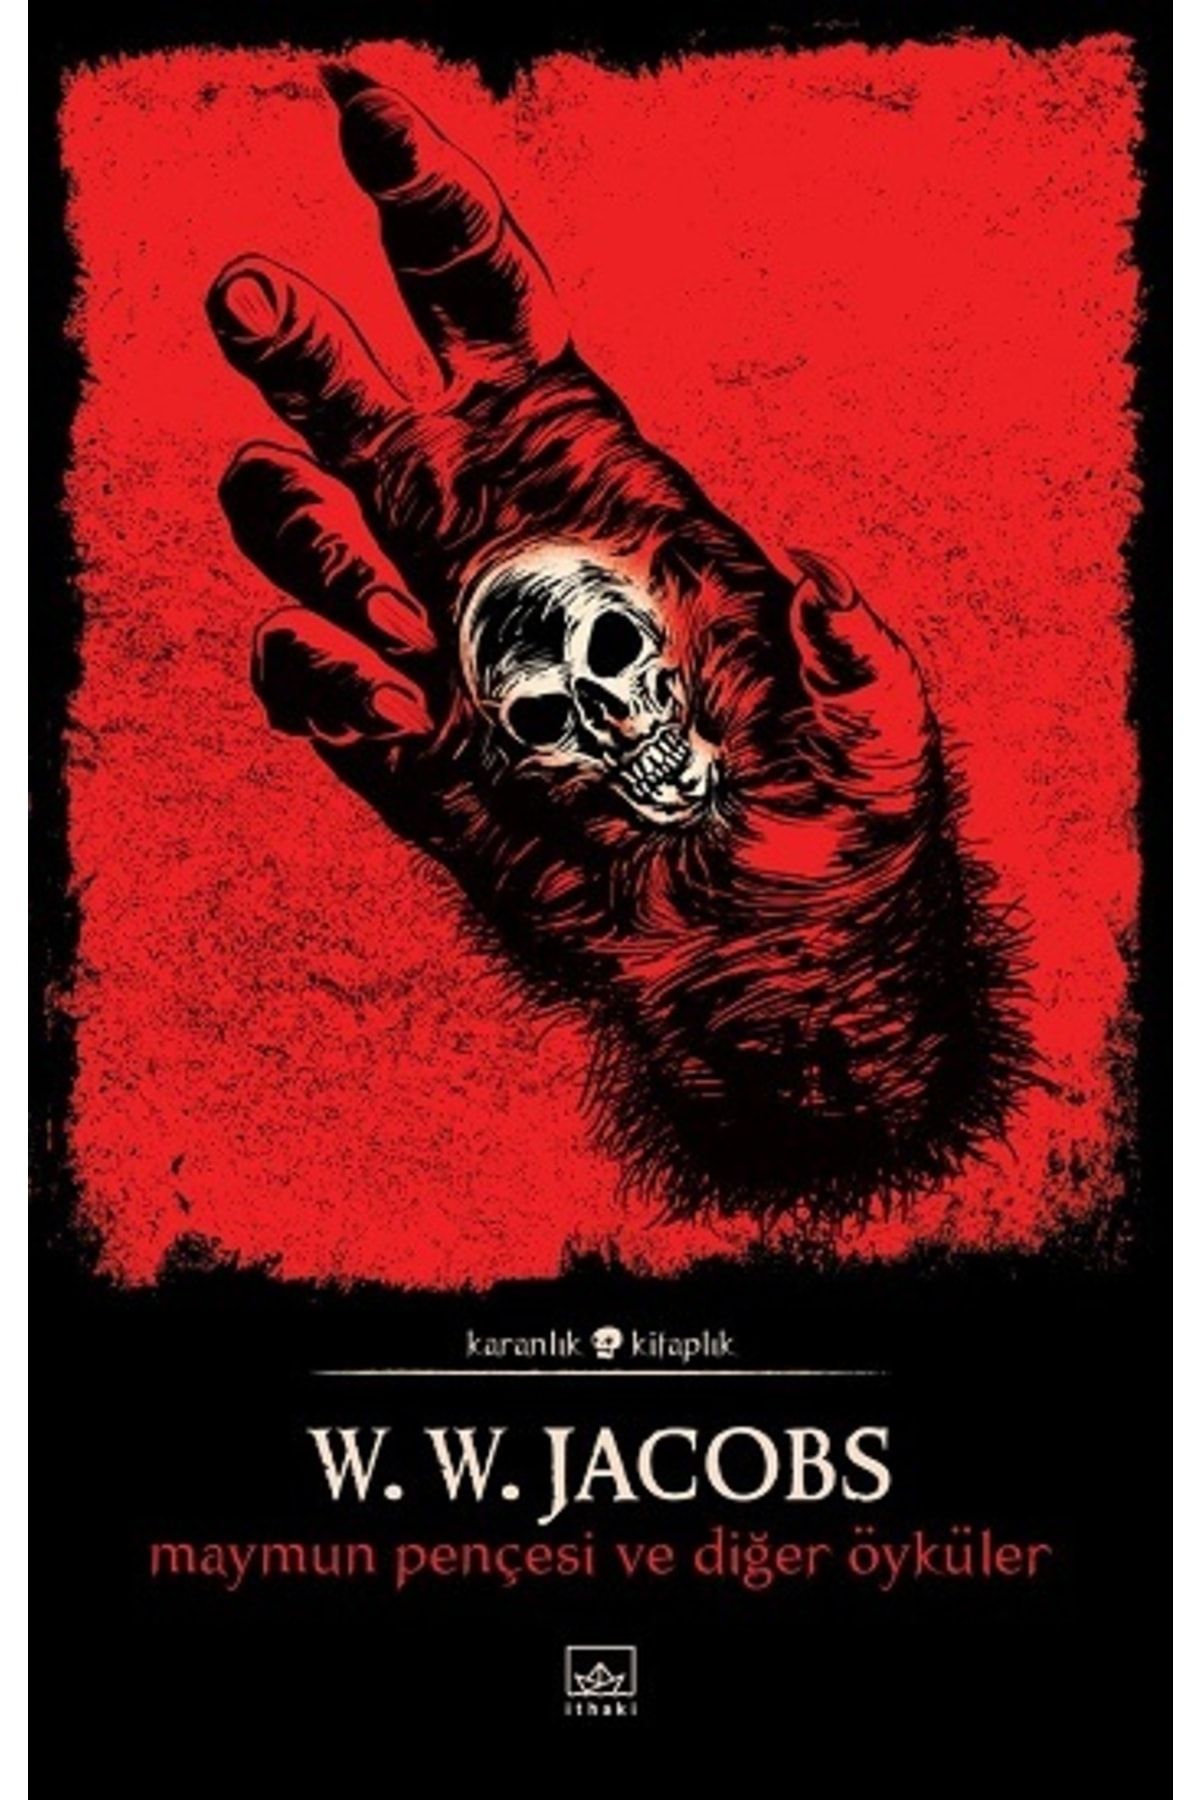 İthaki Yayınları Maymun Pençesi Ve Diğer Öyküler, W. W. Jacobs, Inları, Maymun Pençesi Ve Diğer Öyküler Kit